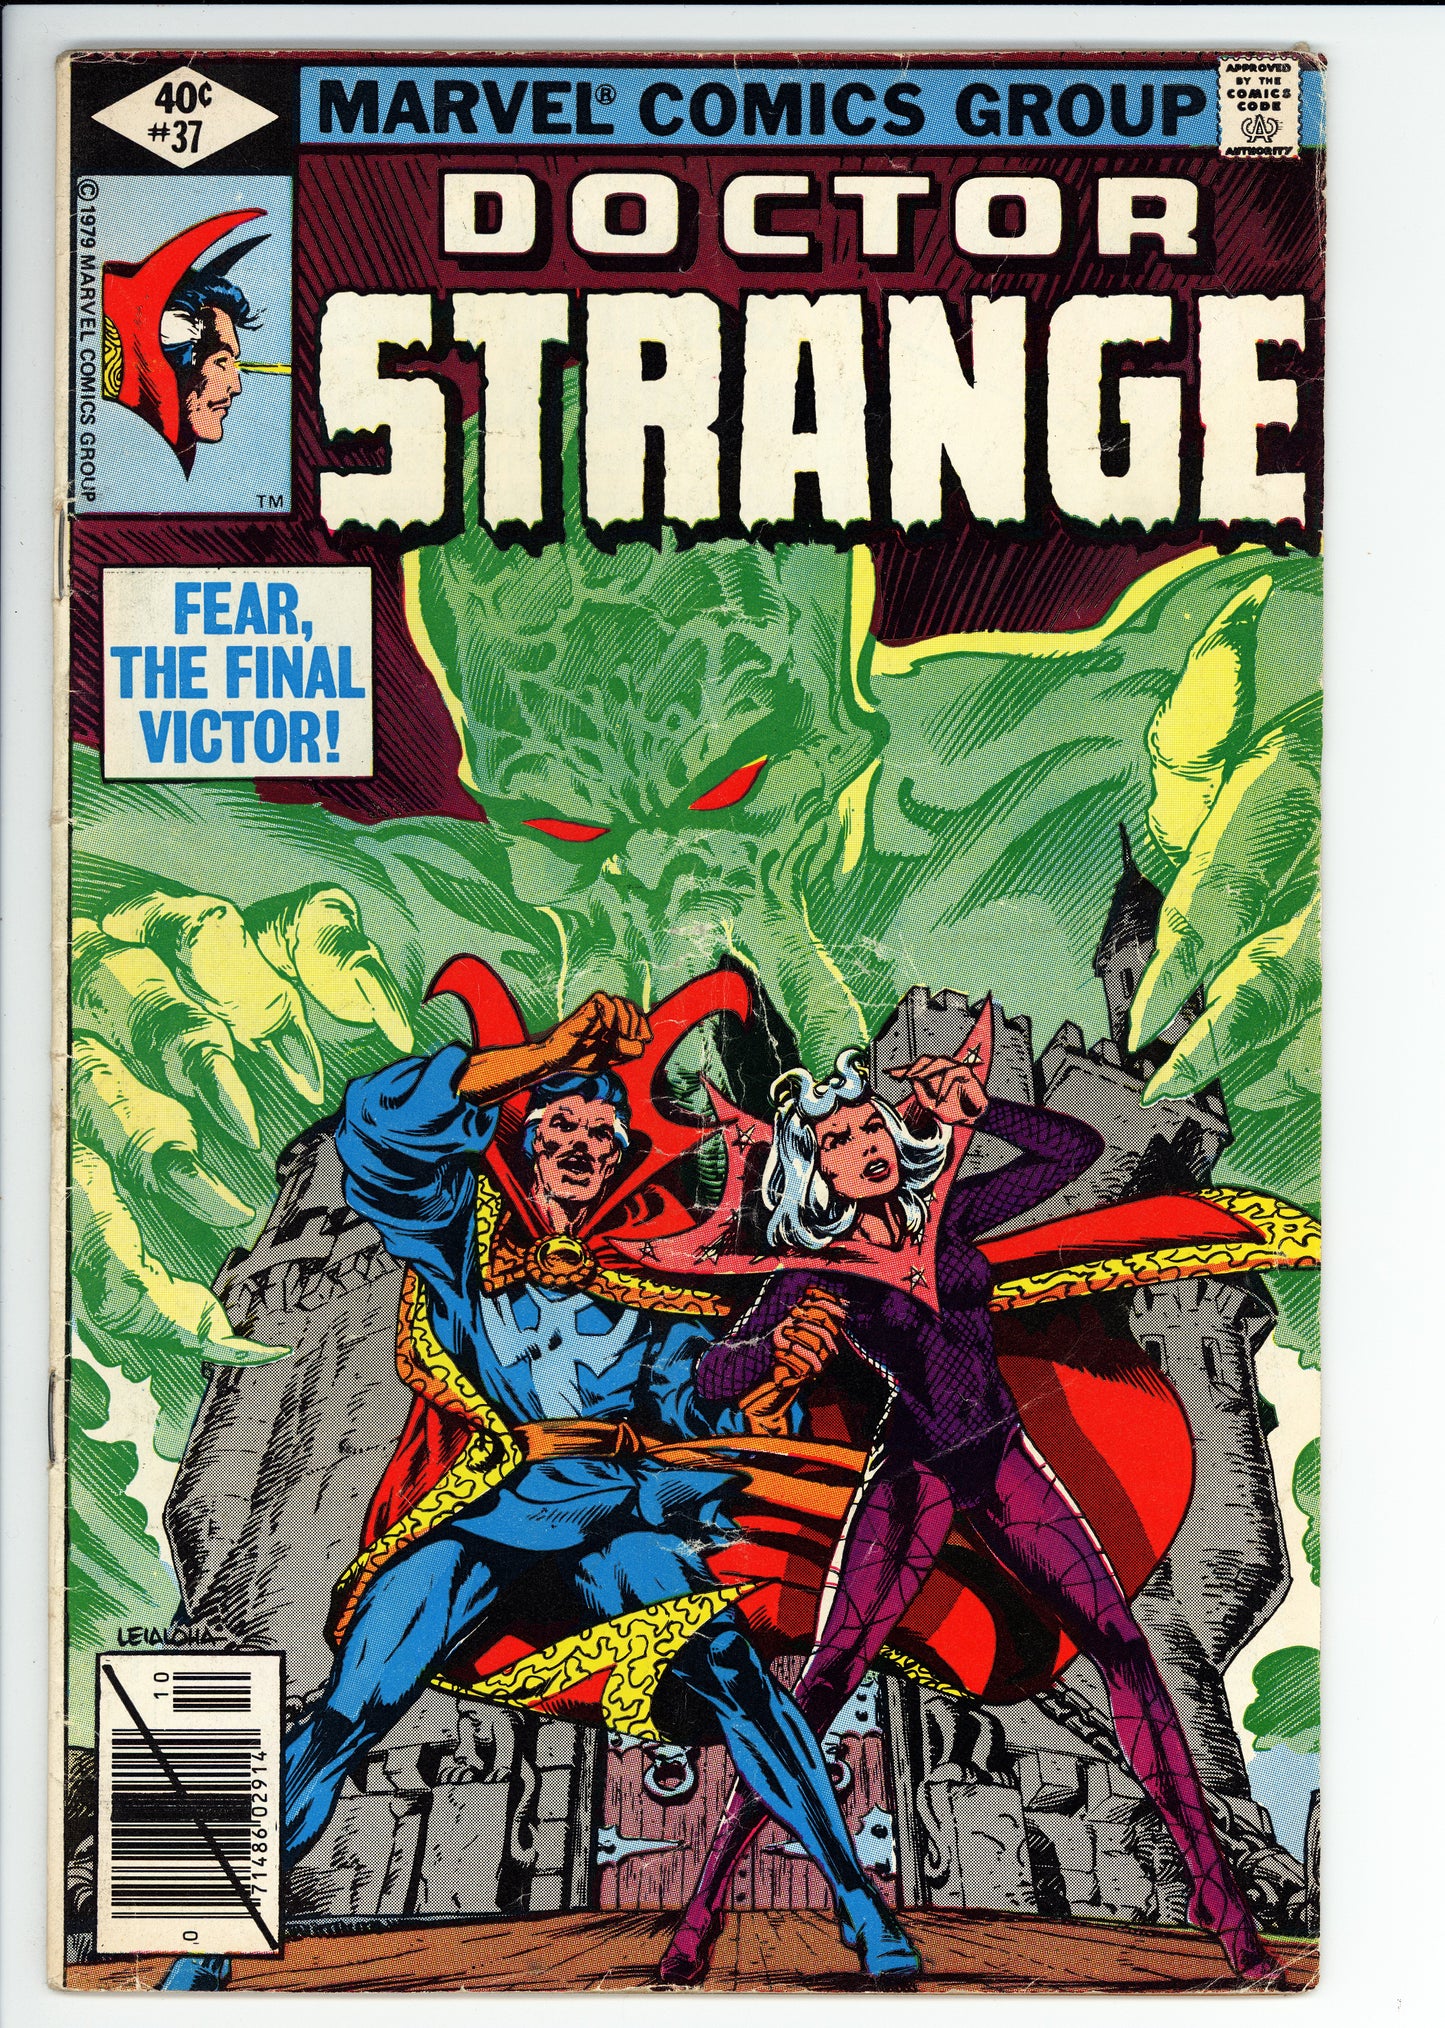 Doctor Strange #37 GD+ Marvel (1979) - Roger Stern, Gene Colan Art/Story